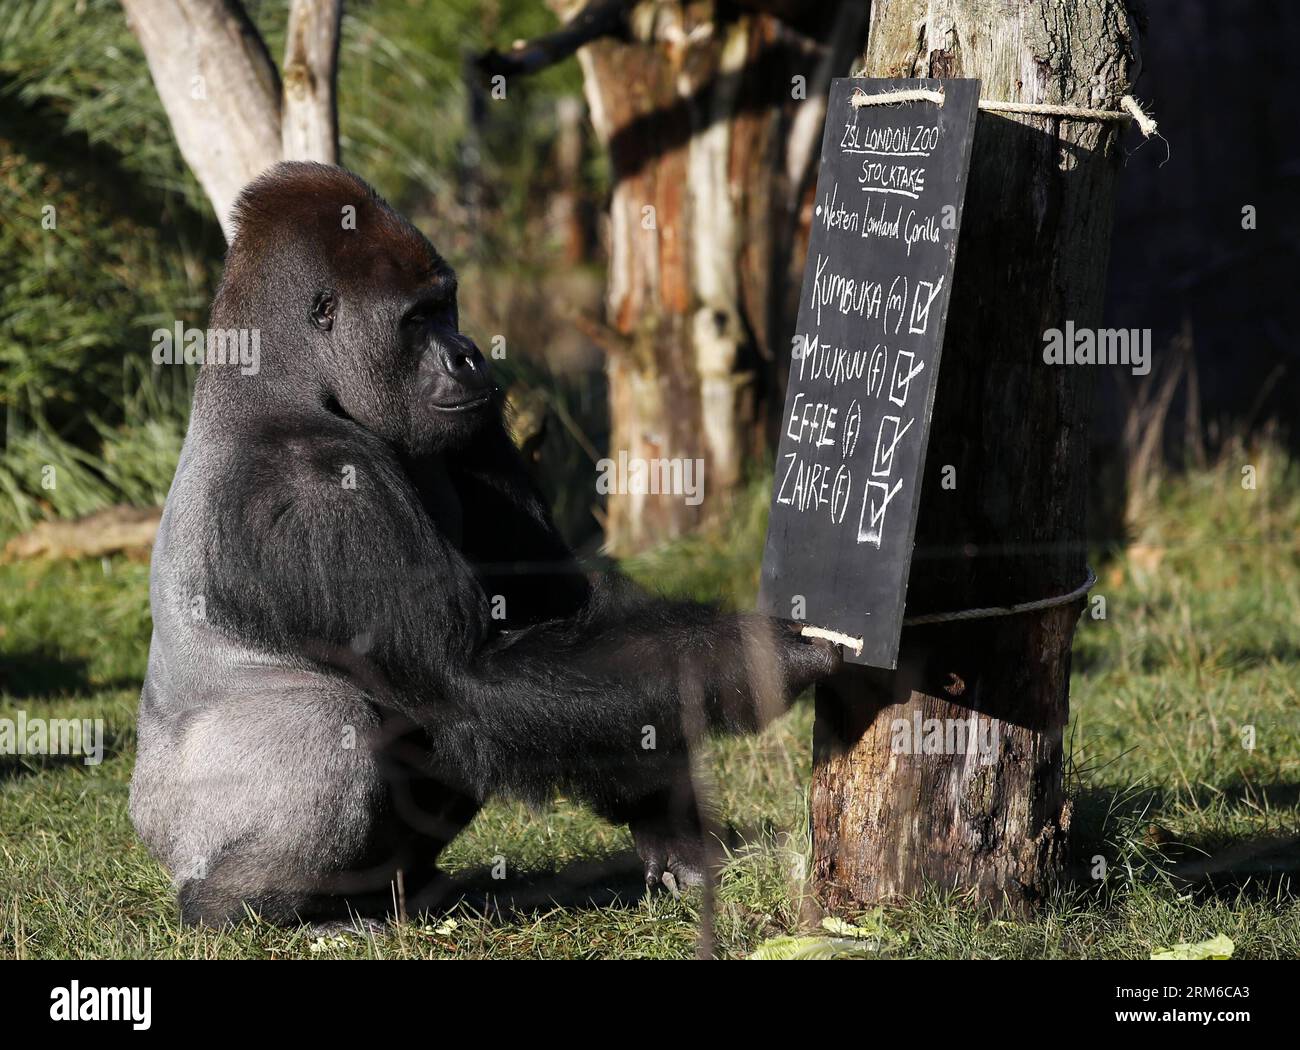 (140102) -- LONDRA, 2 gennaio 2014 (Xinhua) -- Kumbuka, un gorilla di pianura occidentale di silverback, guarda nel Consiglio durante lo stock annuale di animali dello ZSL London Zoo a Londra, in Gran Bretagna, il 2 gennaio 2014. Lo stock annuale dello zoo richiede ai detentori di controllare il numero di ciascuna delle più di 800 specie uniche, compresi invertebrati, uccelli, pesci, mammiferi, rettile e anfibio. Il conteggio obbligatorio è richiesto come parte della licenza dello zoo dello ZSL London Zoo e i risultati sono registrati nel sistema informativo internazionale delle specie (ISIS), dove i dati sono condivisi con gli zoo di tutto il mondo e. Foto Stock